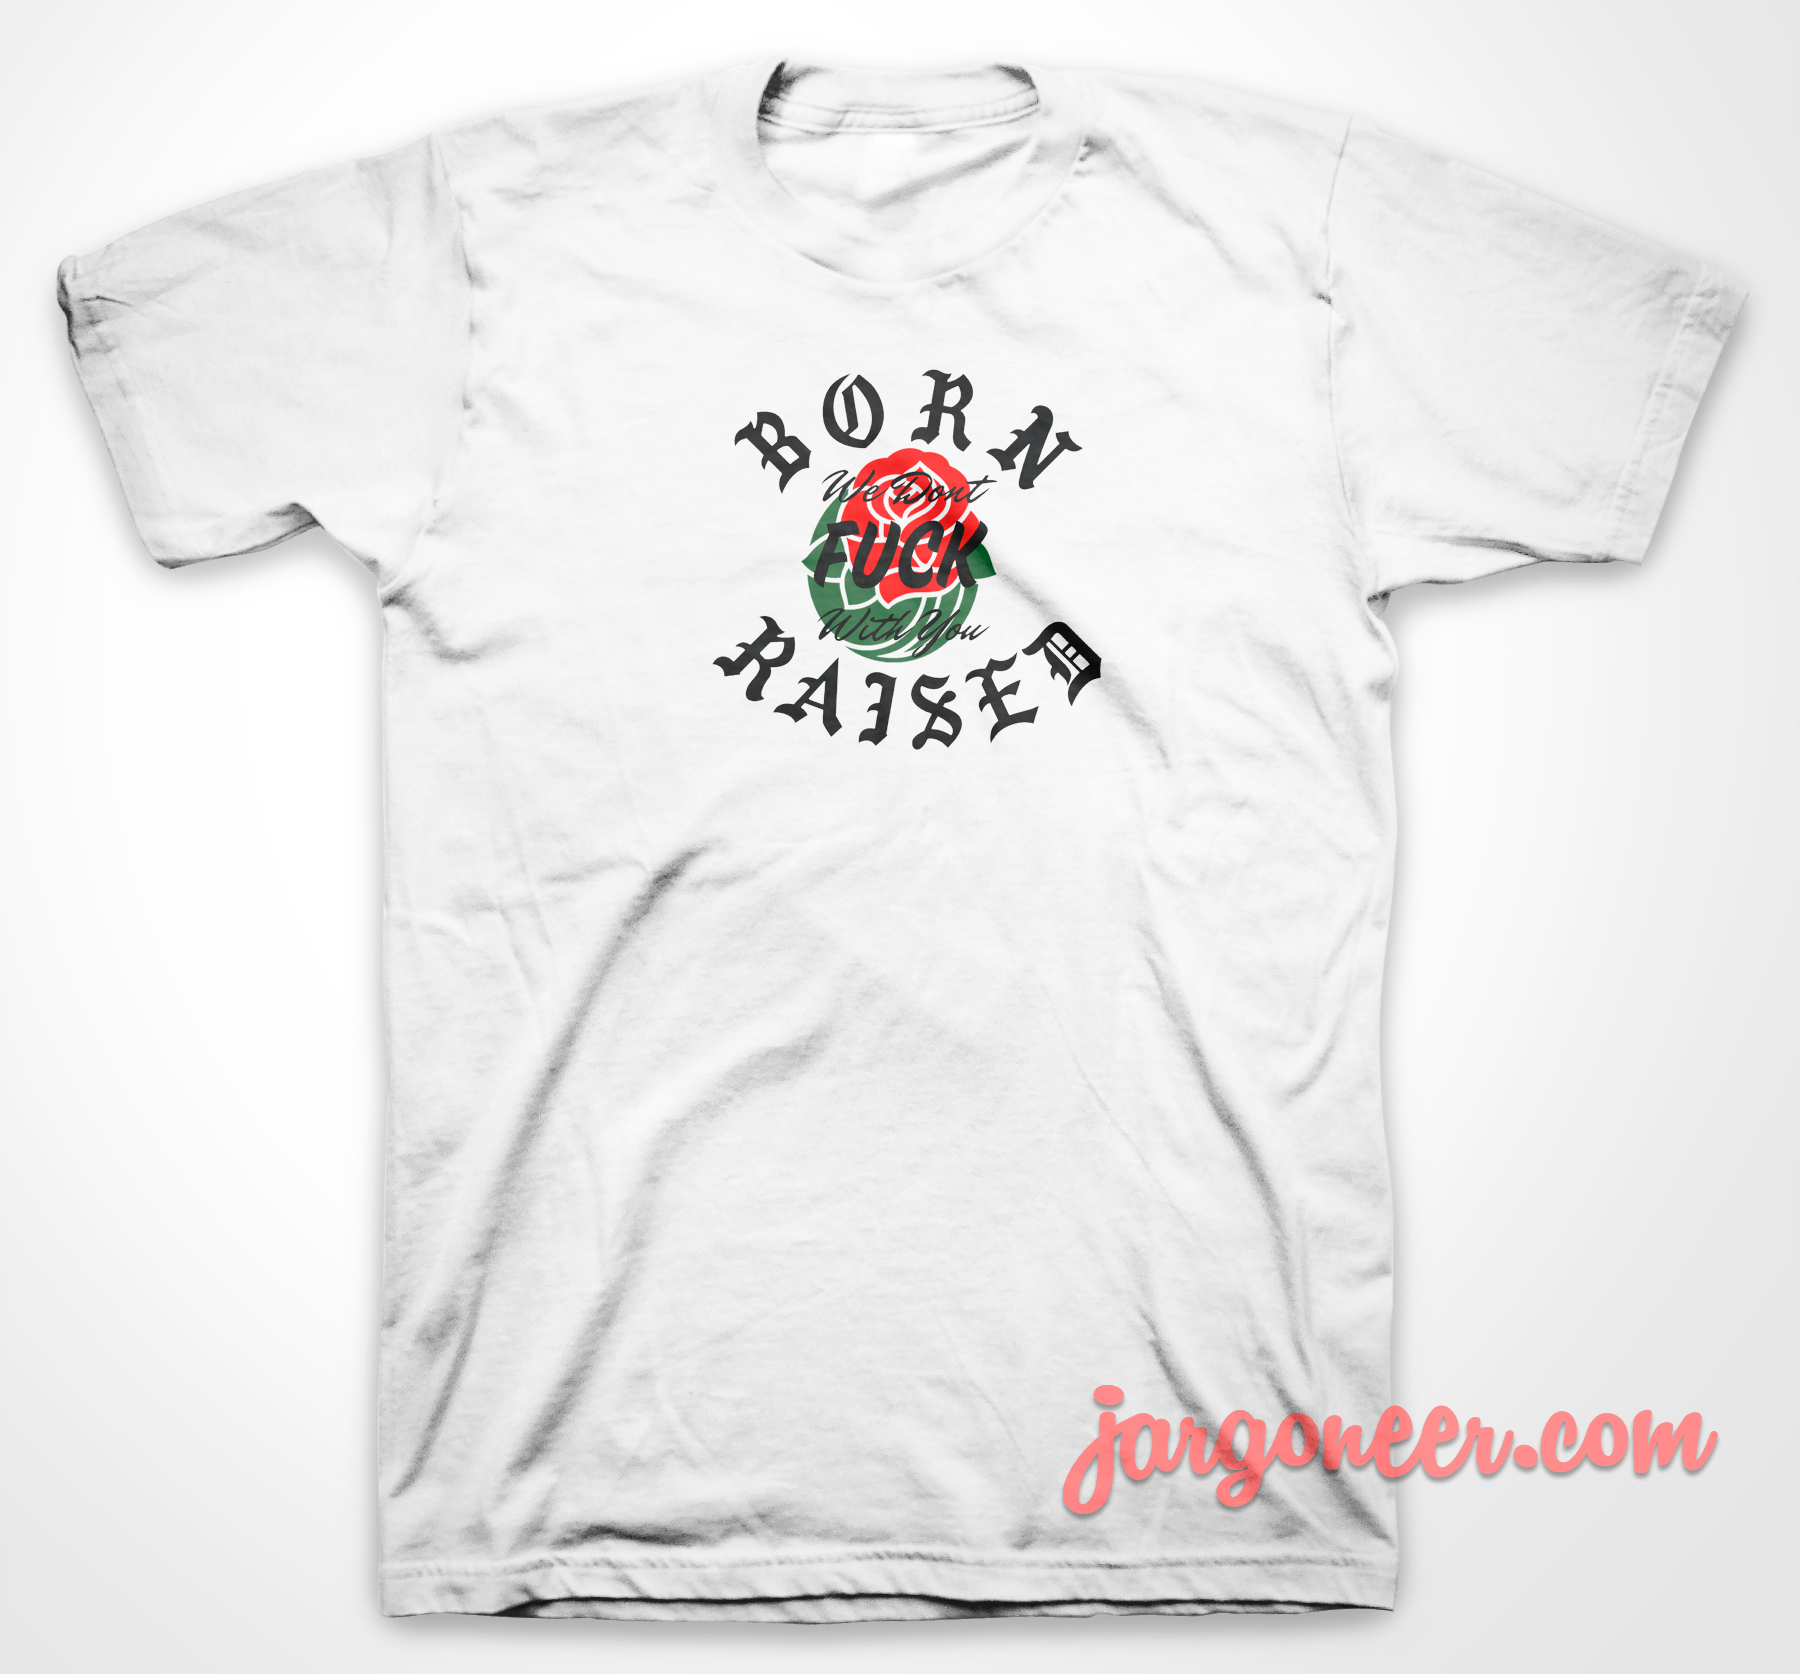 Born X Raised 3 - Shop Unique Graphic Cool Shirt Designs